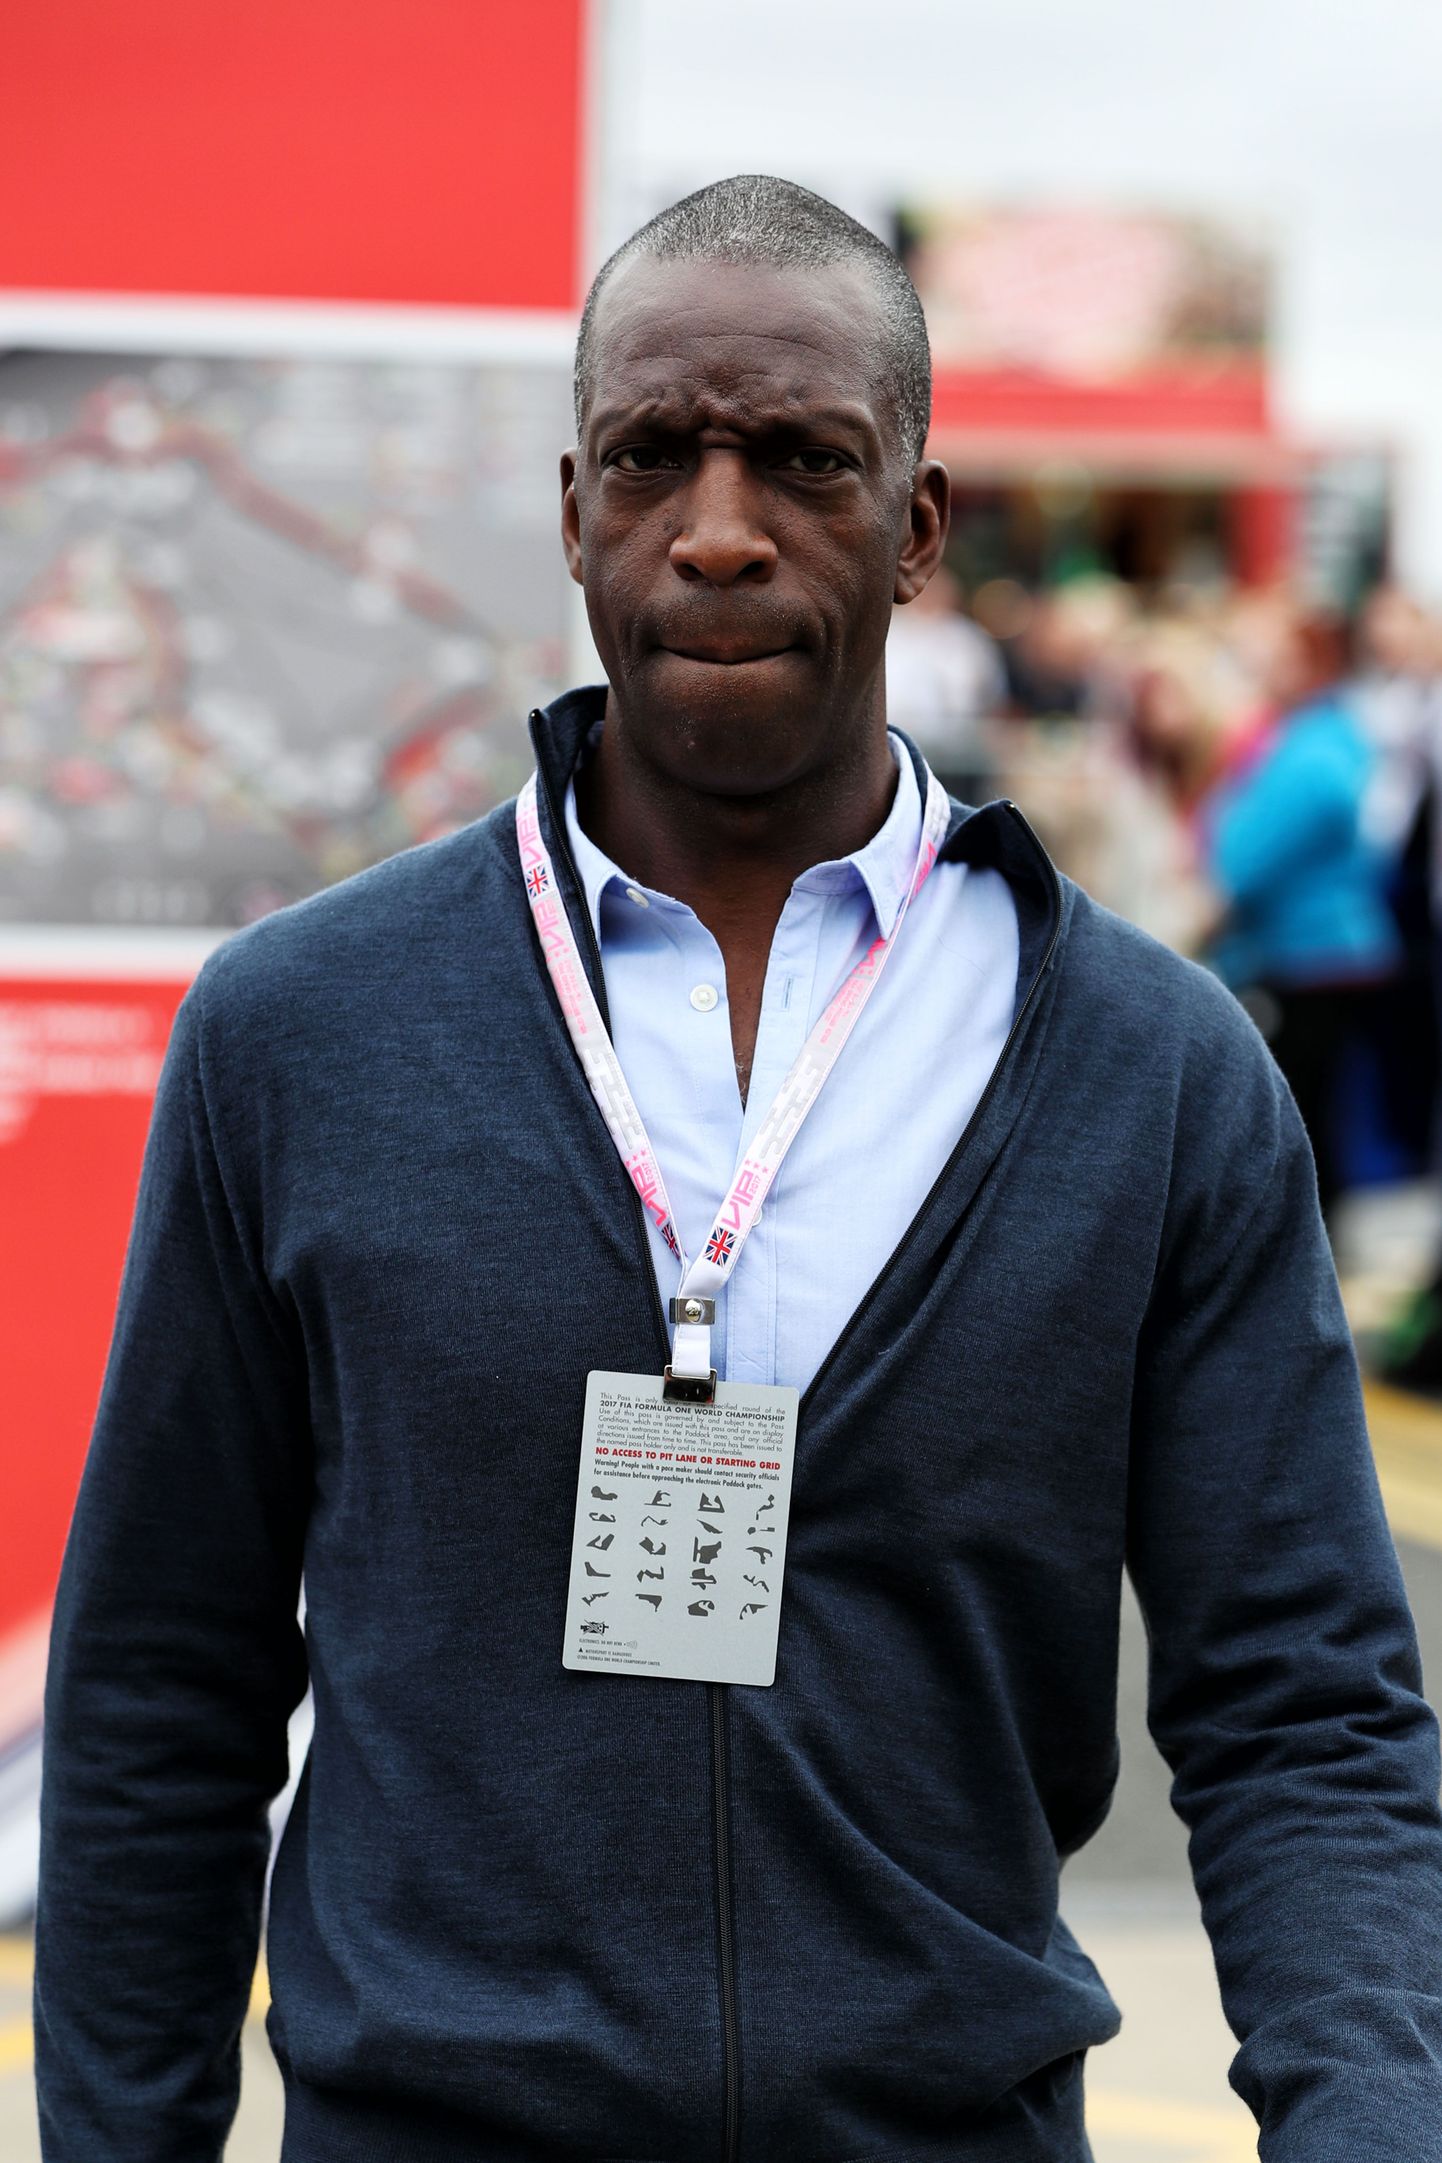 Neljakordne olümpiavõitja ja kaheksakordne maailmameister Michael Johnson.